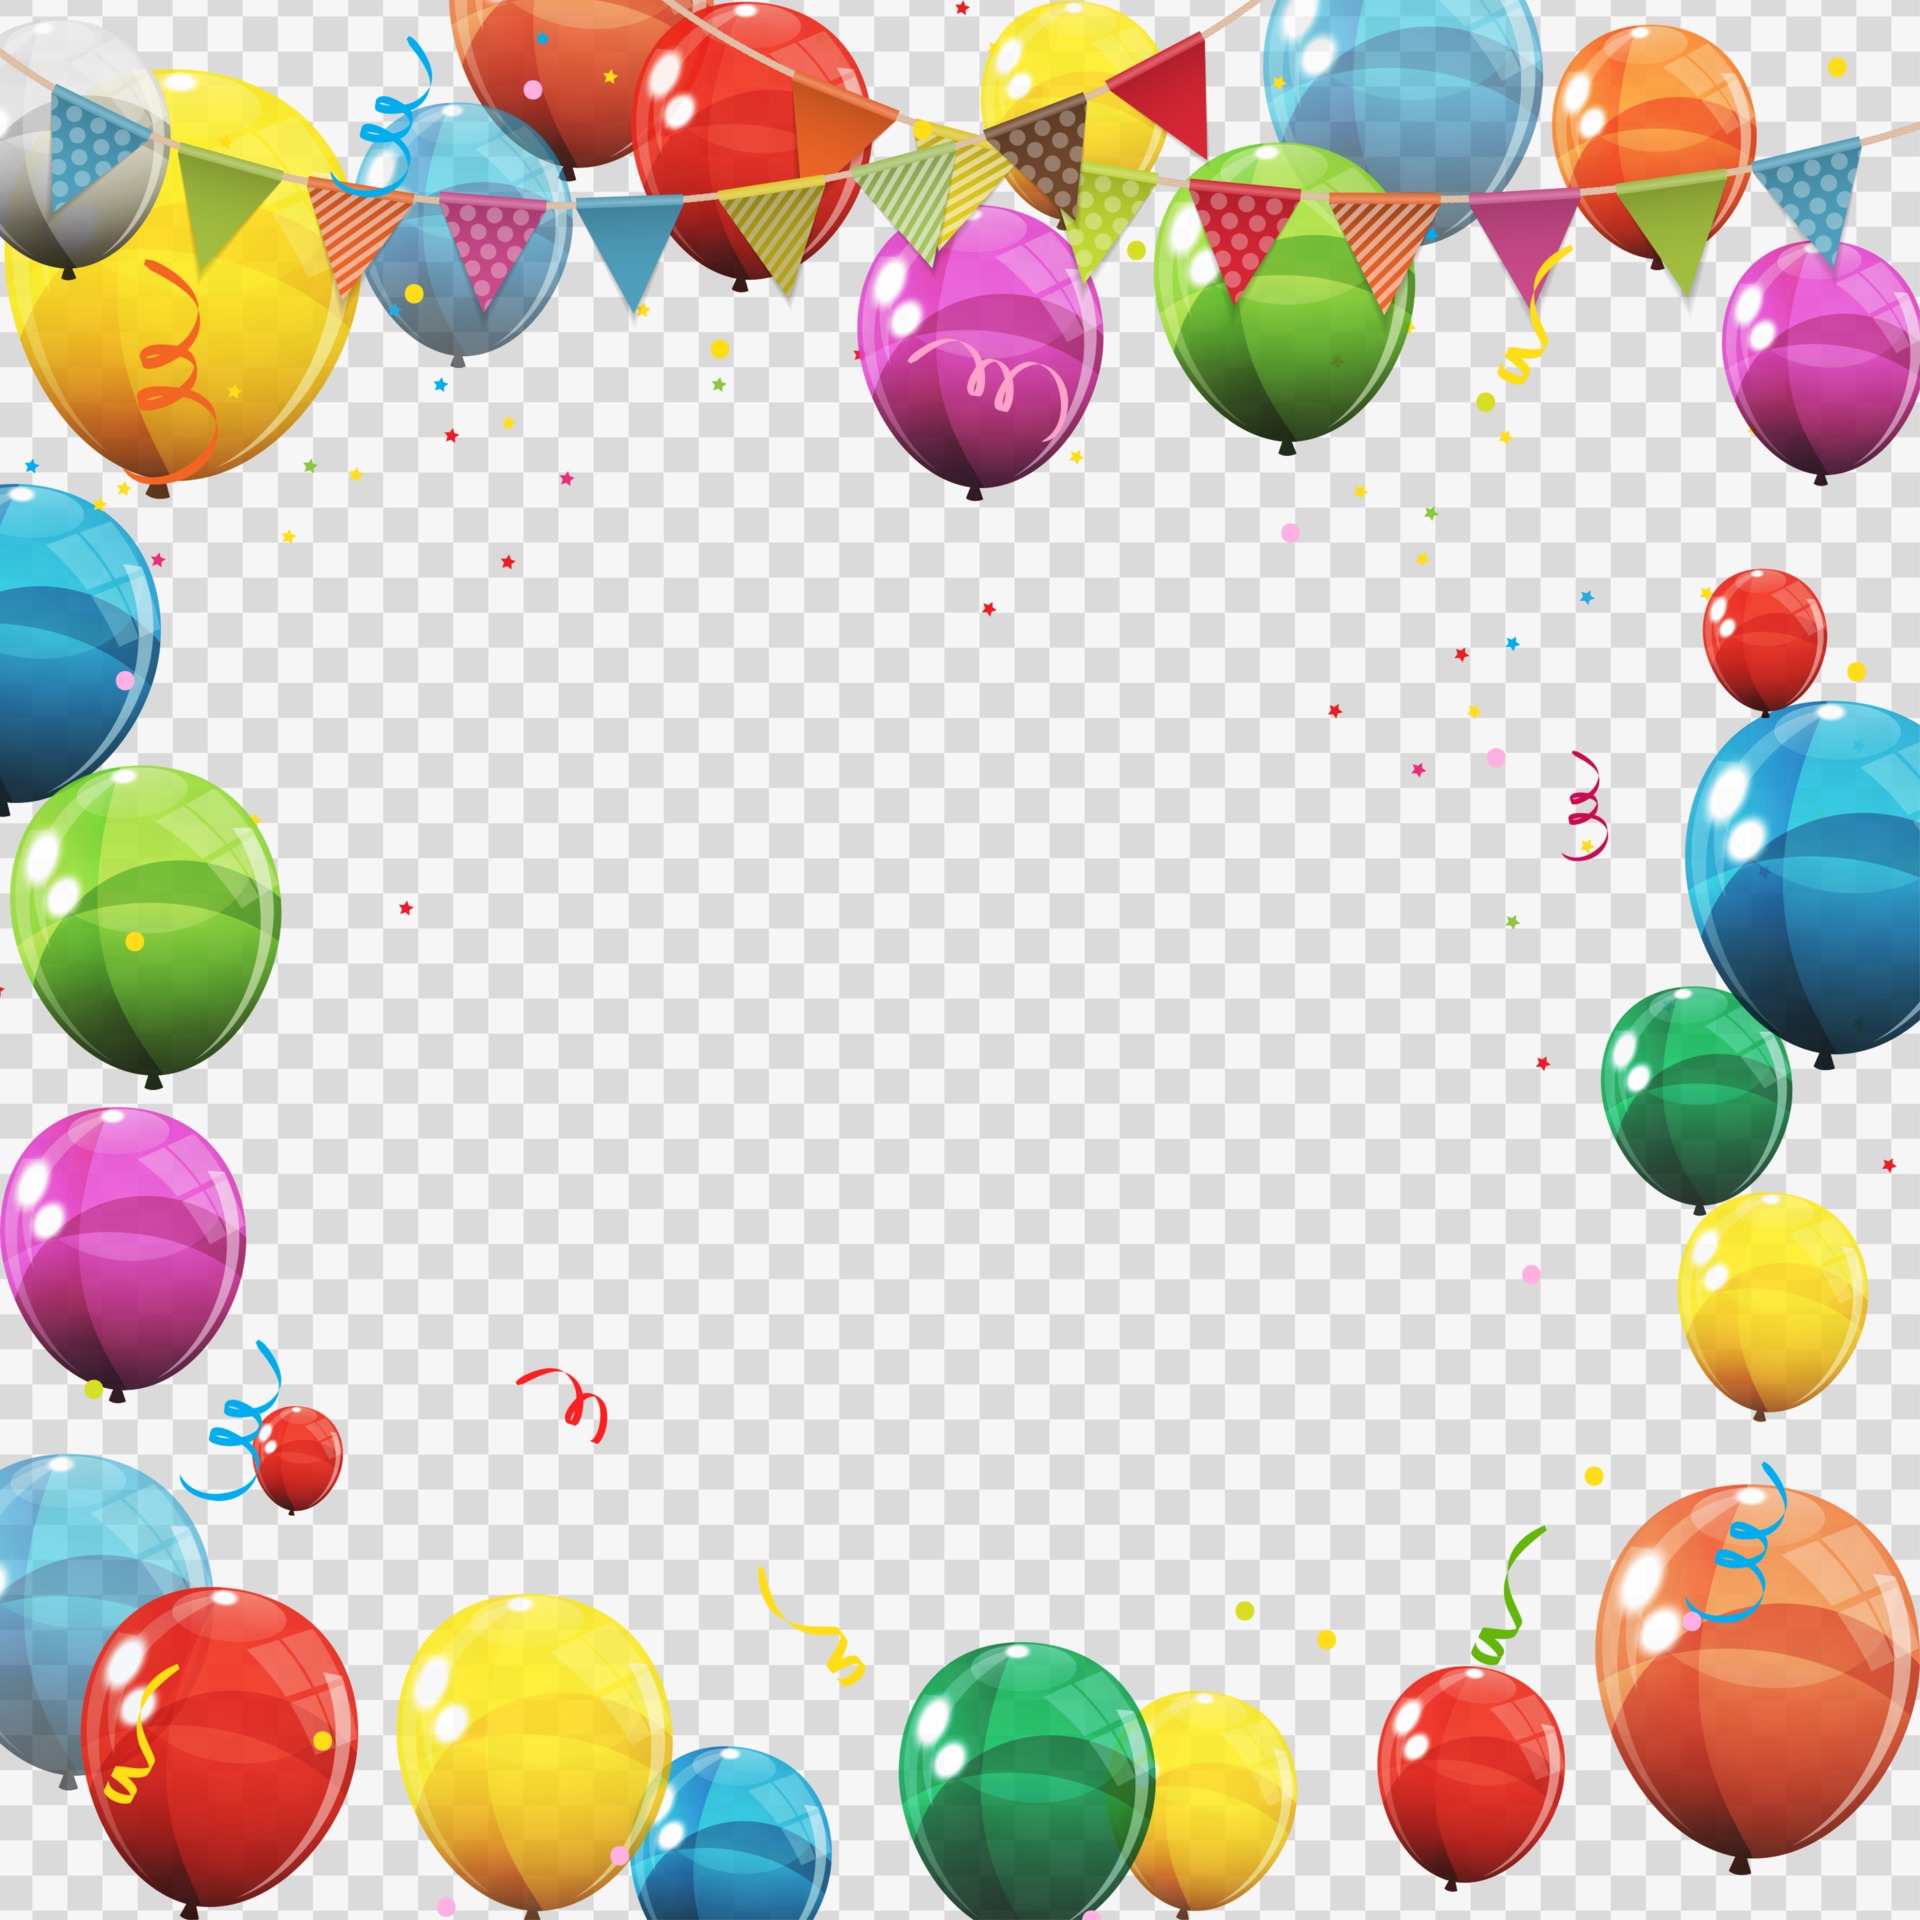 Hij commentaar drempel groep van kleur glanzende helium ballonnen geïsoleerd. set van ballonnen en  vlaggen voor verjaardag, jubileumfeest, feestdecoraties 2478754 - Download  Free Vectors, Vector Bestanden, Ontwerpen Templates